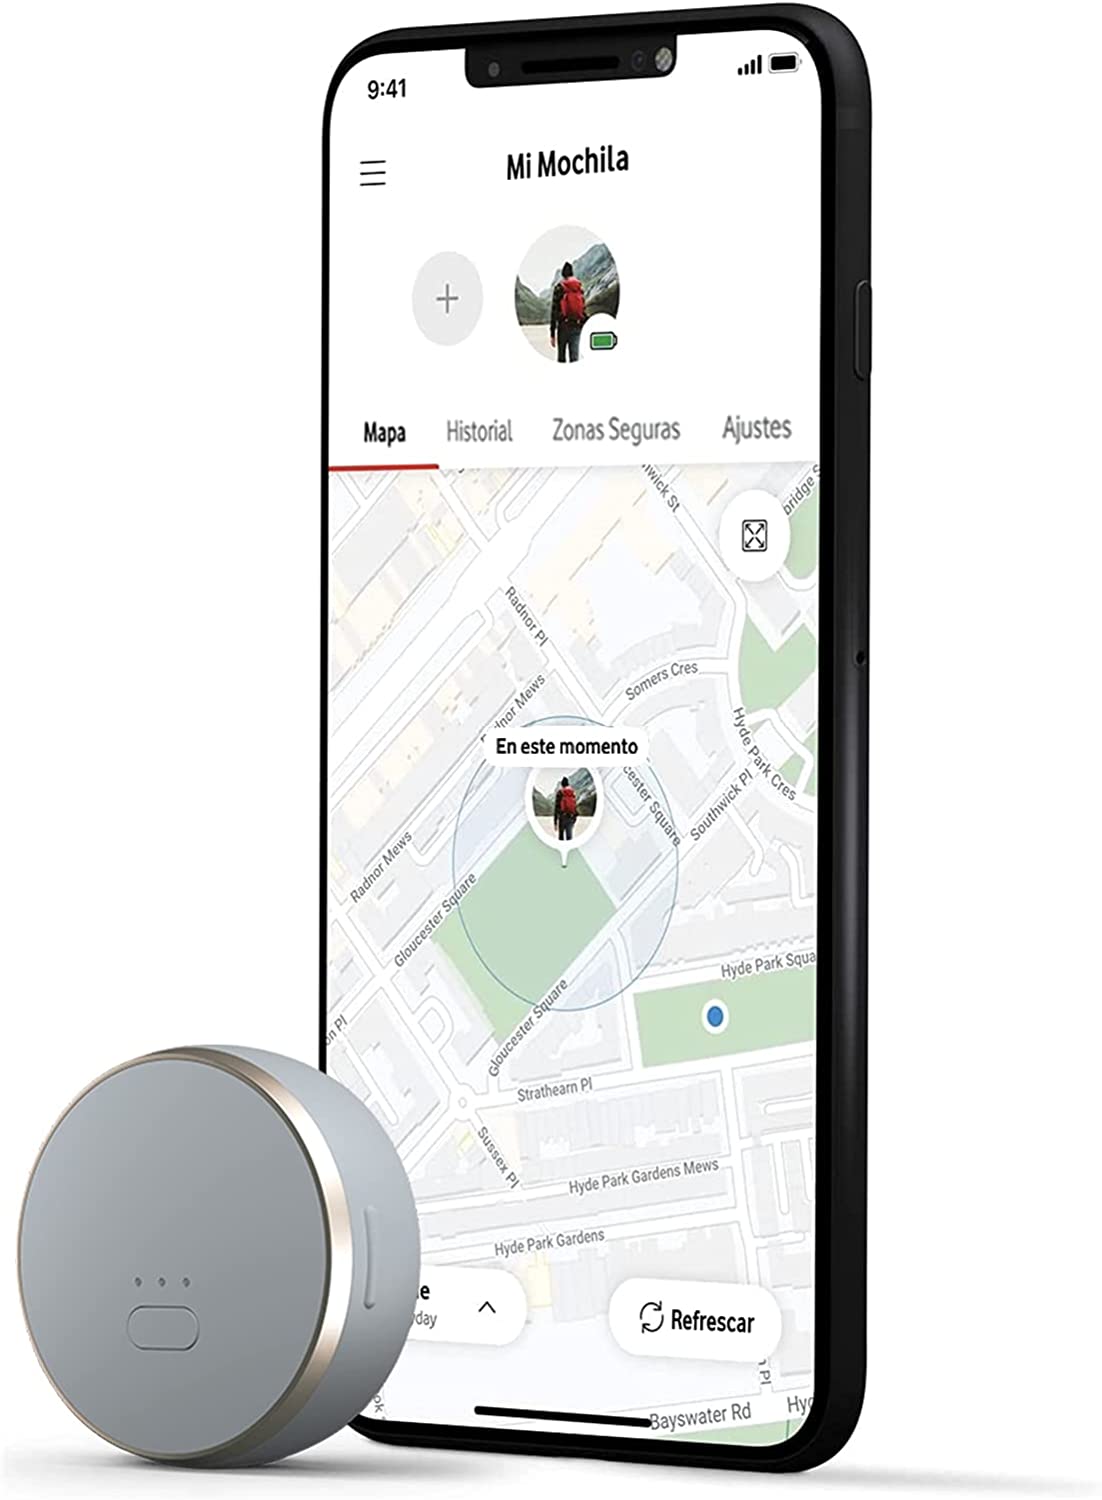 Localizador GPS para el coche: monitoriza en tiempo real tu vehículo por  solo 32€